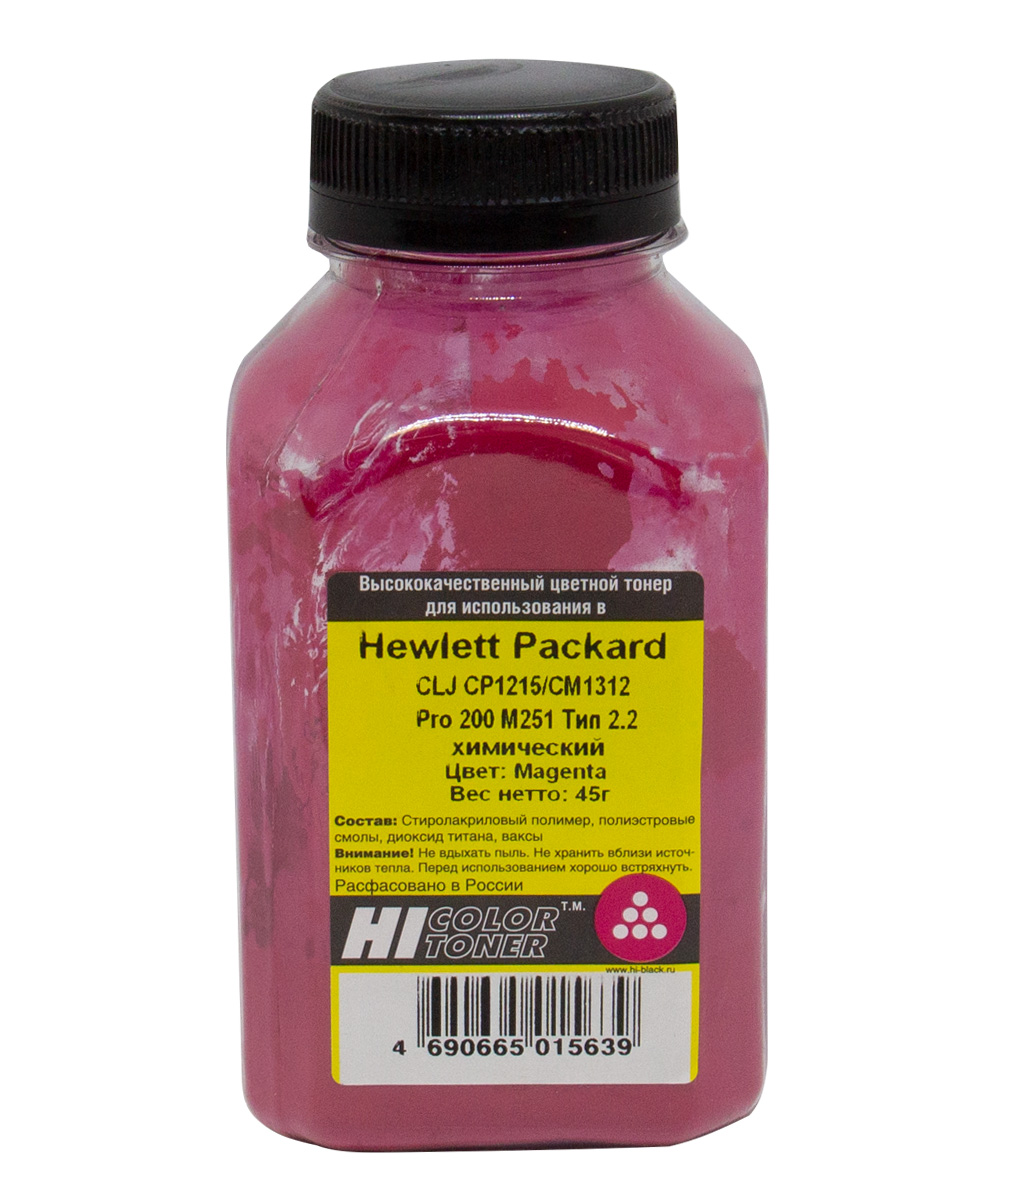 Тонер Hi-Black (Тип 2.2) химический для HP Color LJ CP1215/ CM1312/ Pro 200 M251, пурпурный, 45 г.